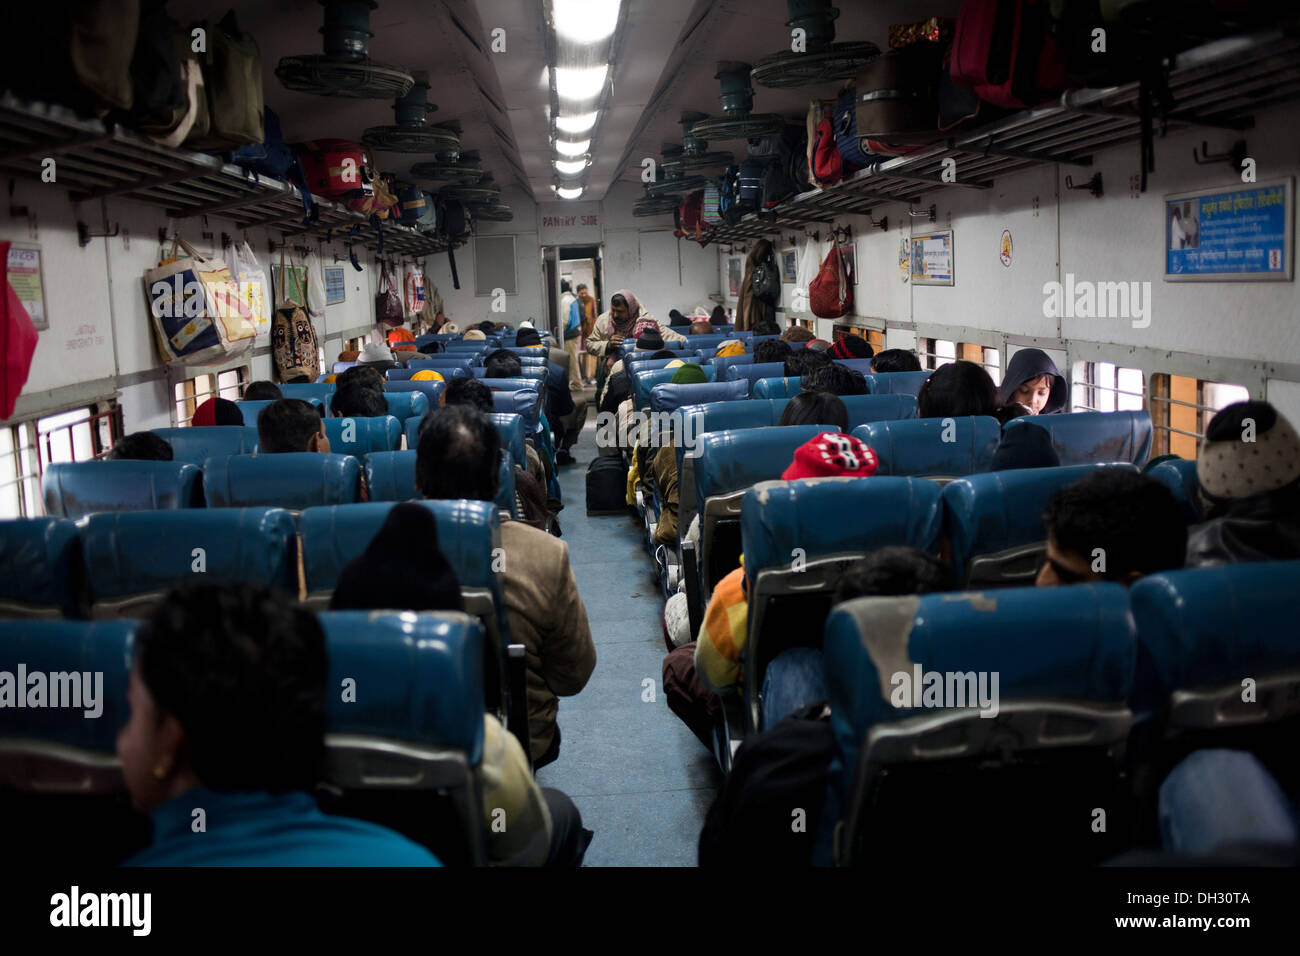 Innenraum des Zuges Trainer Stuhl Auto Indian Railway Uttrakhand Indien Asien Stockfoto